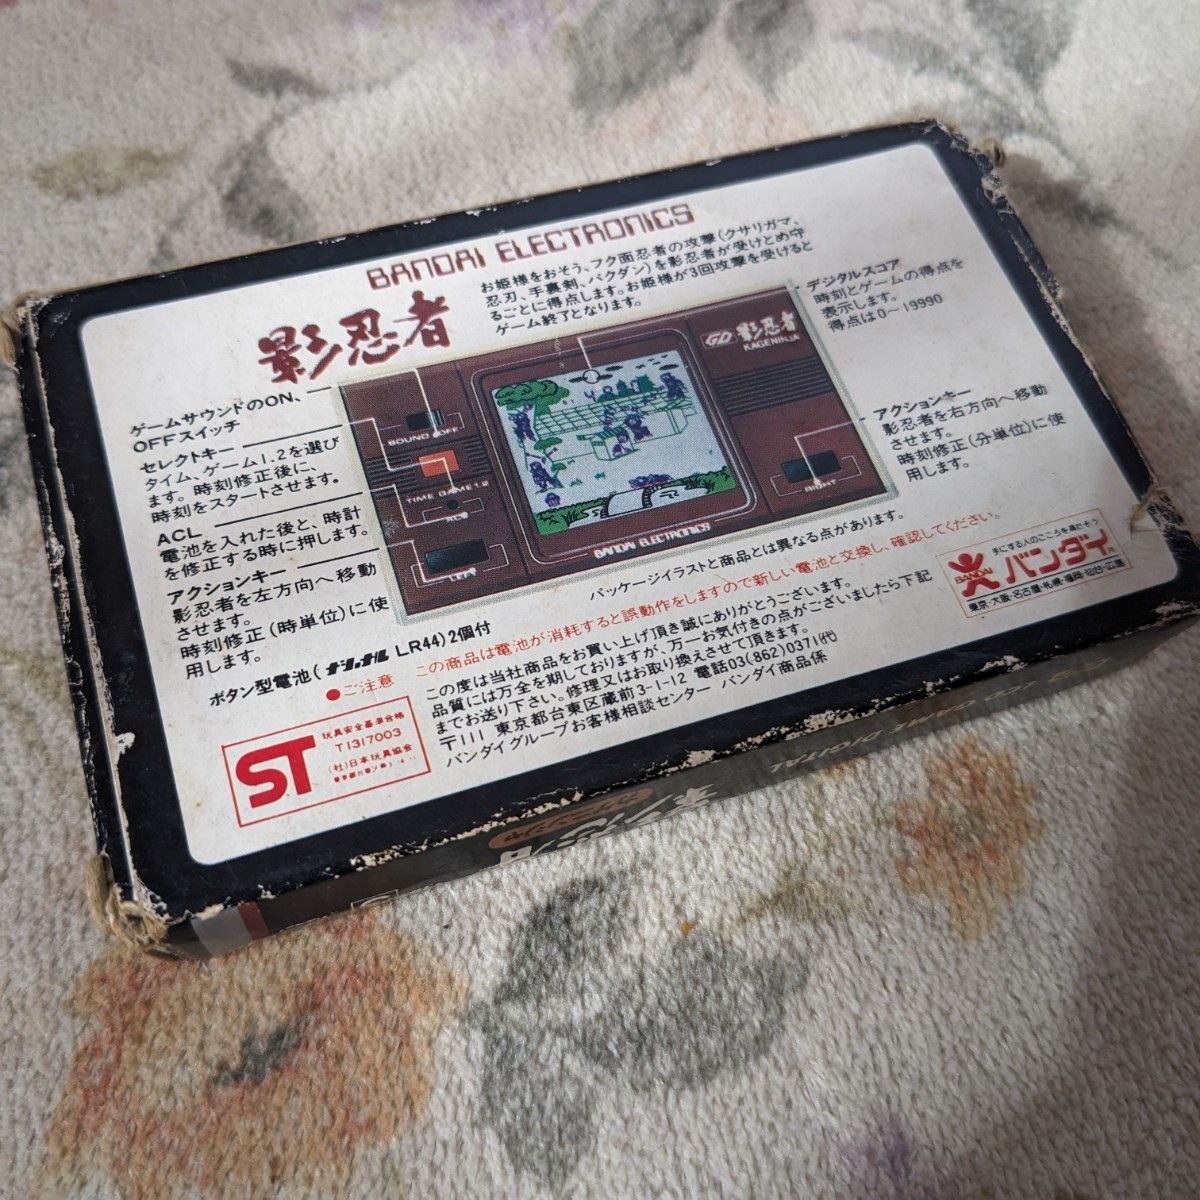 【値下げしました】影忍者 バンダイ LSIゲーム デジタルシリーズ 1982年 ゲームウォッチ